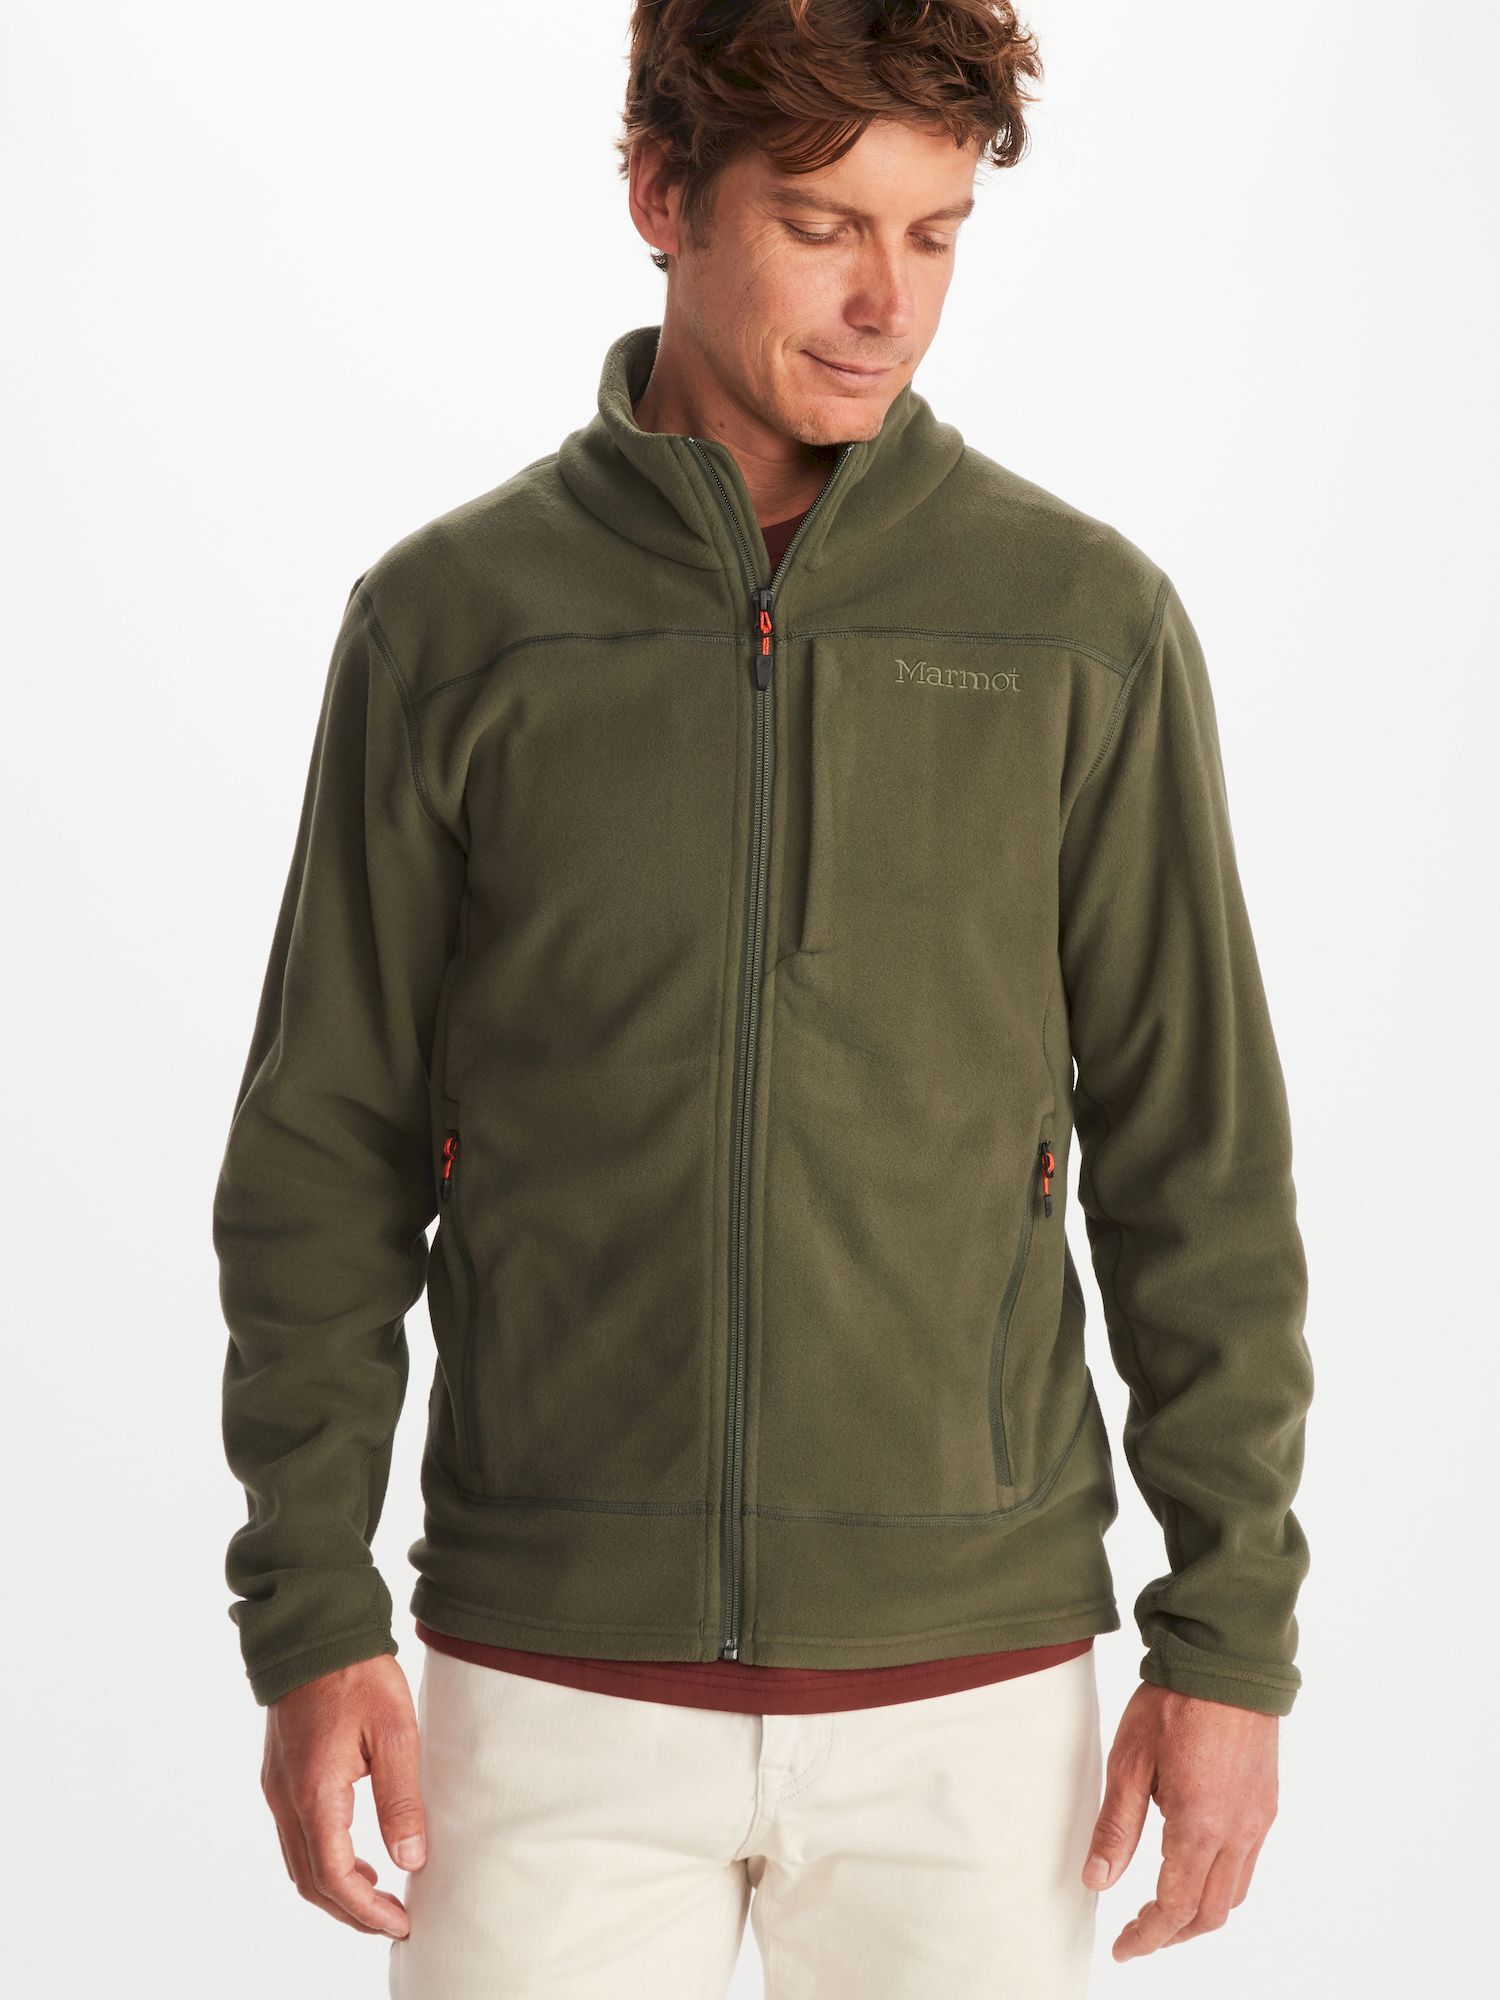 Marmot Reactor Polartec Jacket - Fleece jacket - Men's | Hardloop